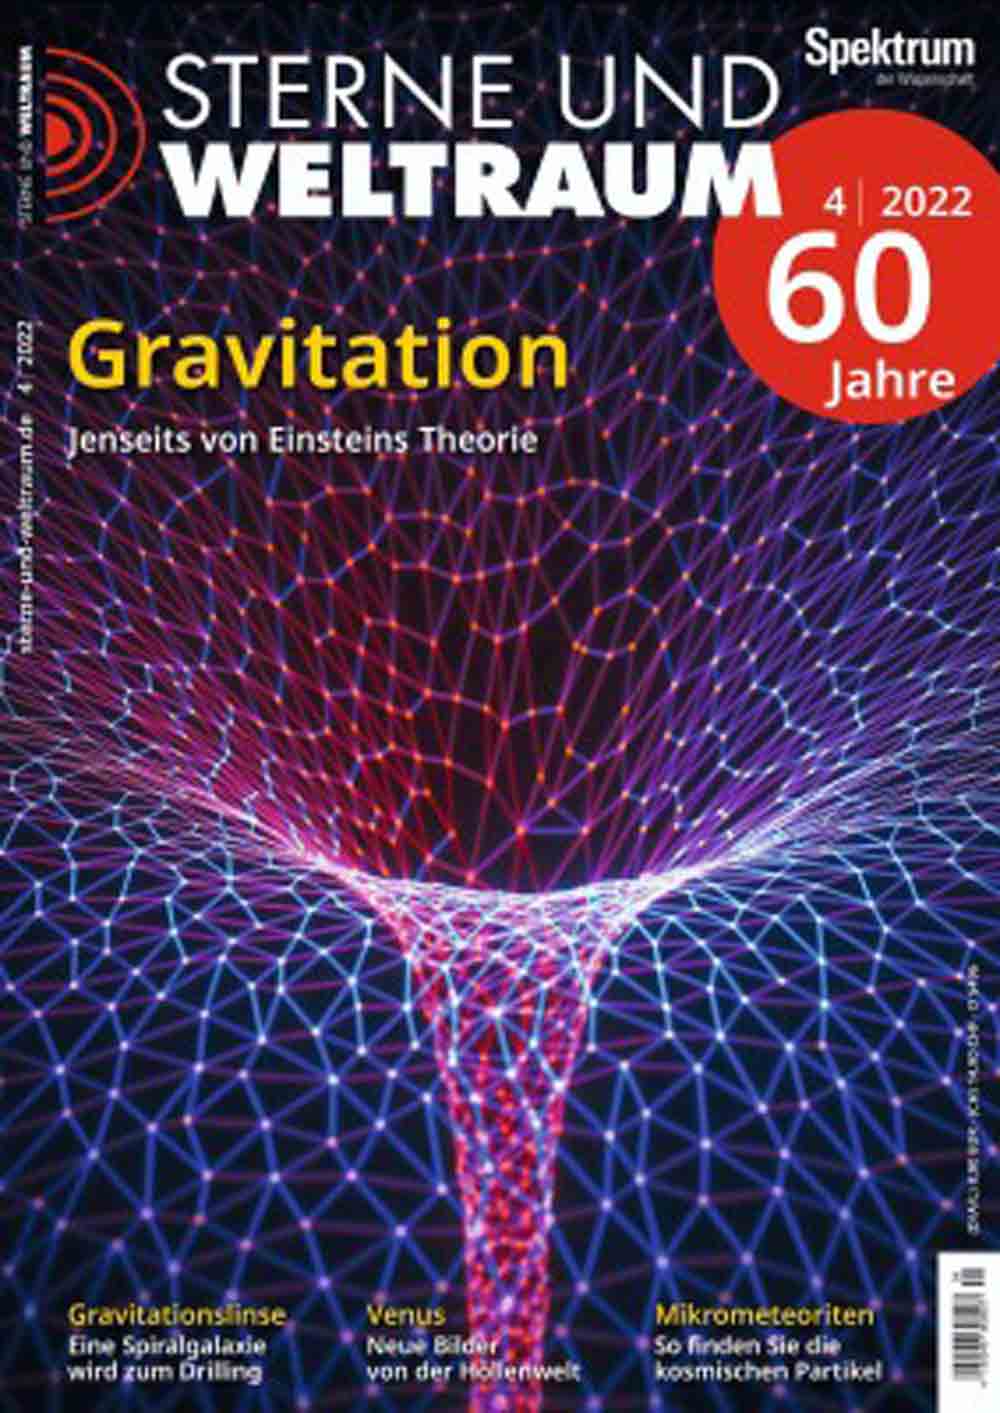 Jubiläum 60 Jahre Magazin »Sterne und Weltraum«, am Puls von Astronomie und Weltraumforschung